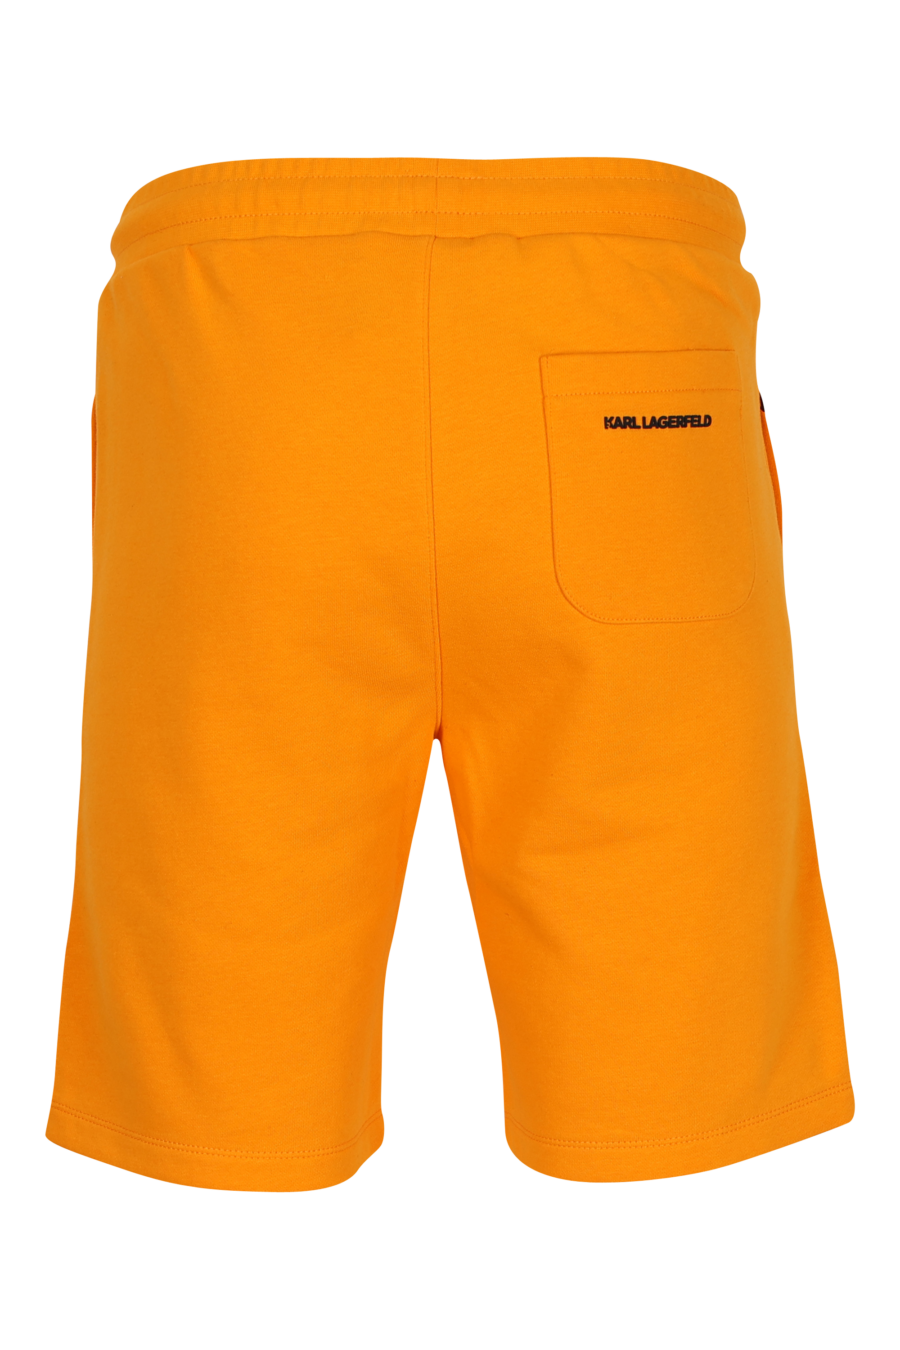 Pantalón de chándal naranja midi con minilogo "karl" en goma - 4062226932936 2